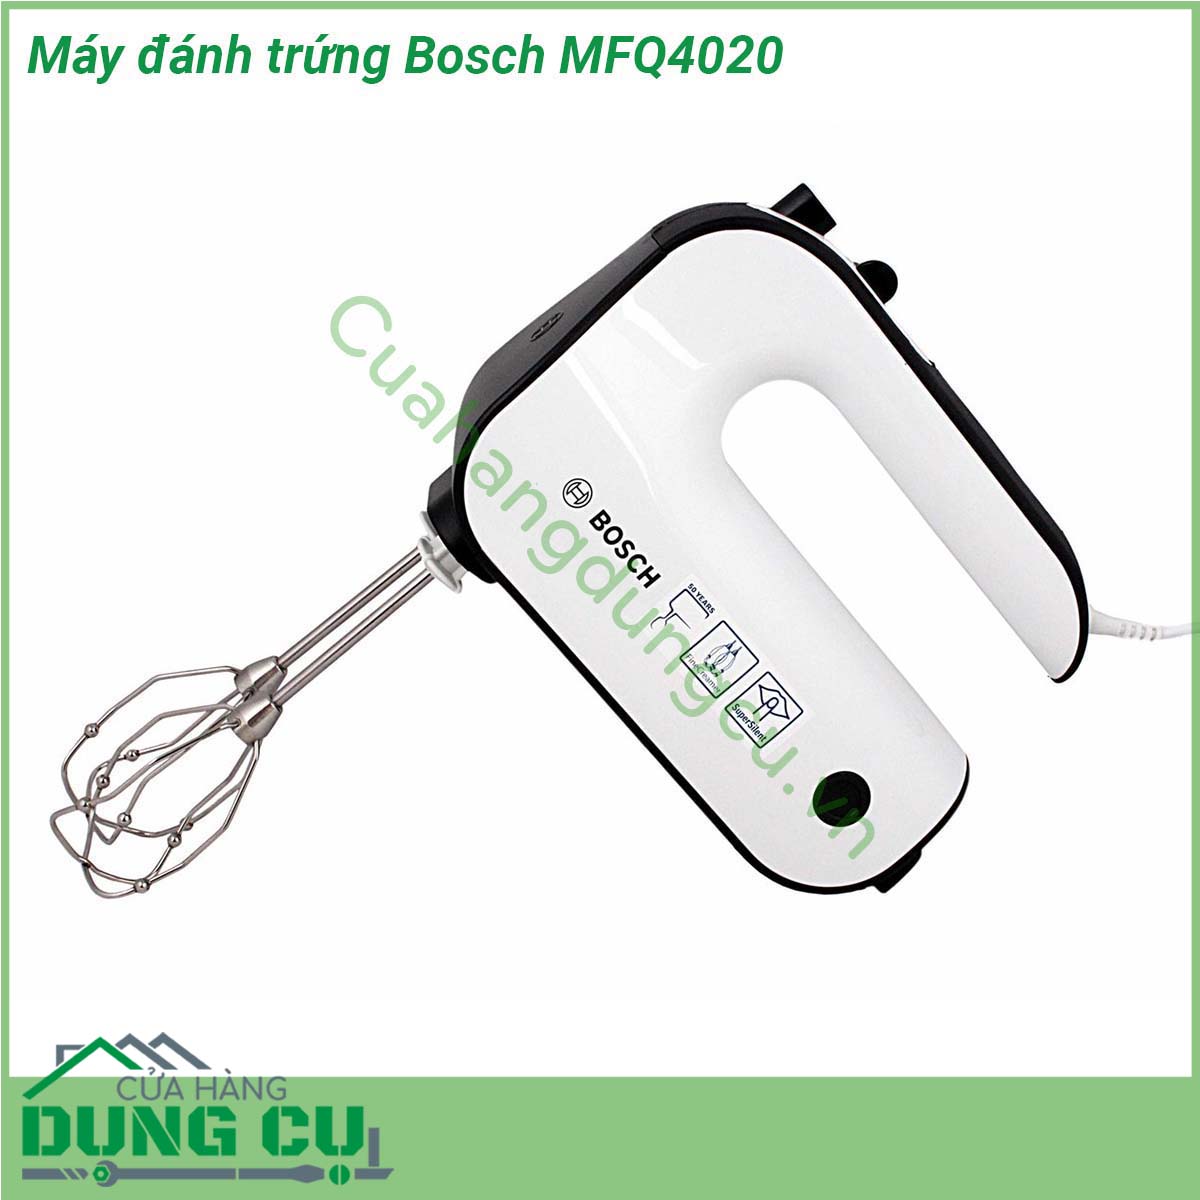 Máy đánh trứng Bosch MFQ4020 có thiết kế gọn nhẹ trang nhã dễ sử dụng hiệu quả lâu bền  hoạt động mạnh mẽ với công suất 450W cùng 5 tốc độ sẽ giúp bạn nhào trộn bột đánh kem đánh trứng và các loại thực phẩm một cách dễ dàng Máy được trang bị 2 bộ que đánh bằng thép không gỉ đảm bảo sức khỏe người dùng và dễ dàng thay thế khi cần thiết Với Máy đánh trứng Bosch MFQ4020 công việc bếp núc của bạn sẽ trở nên nhanh chóng và tiện lợi hơn